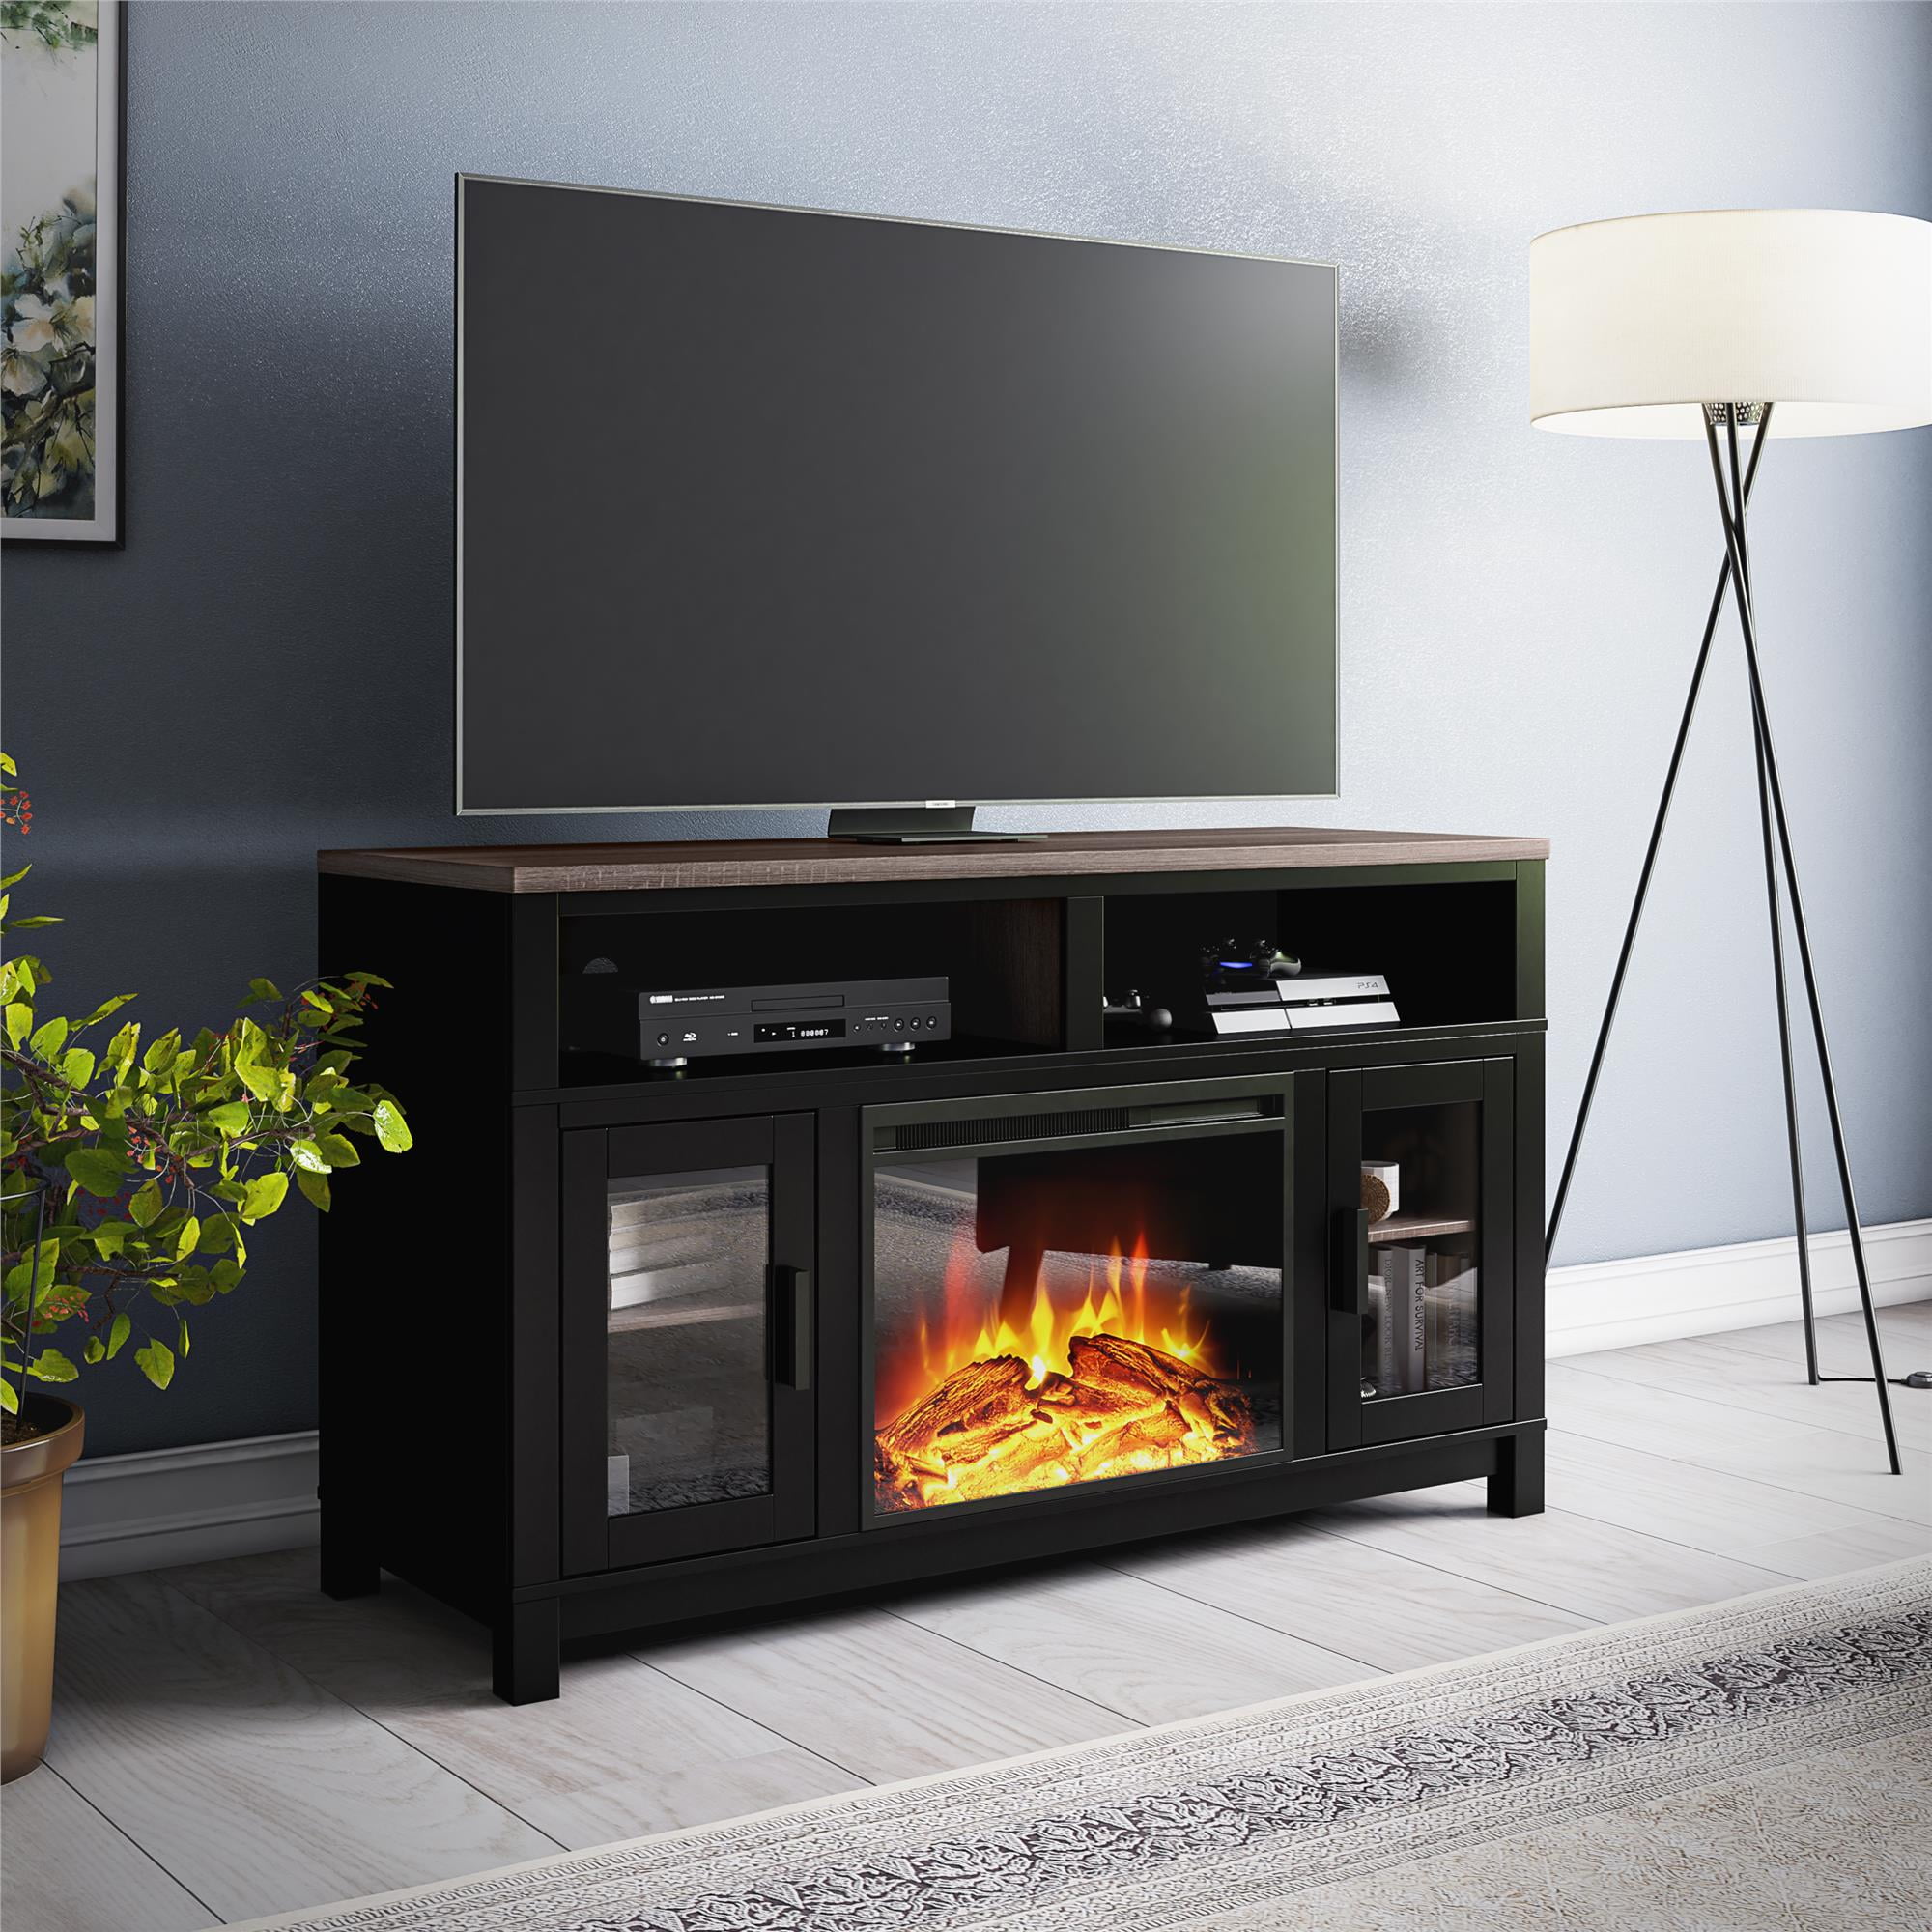 Fireplace Heat Reflectors - , Better Home Improvement